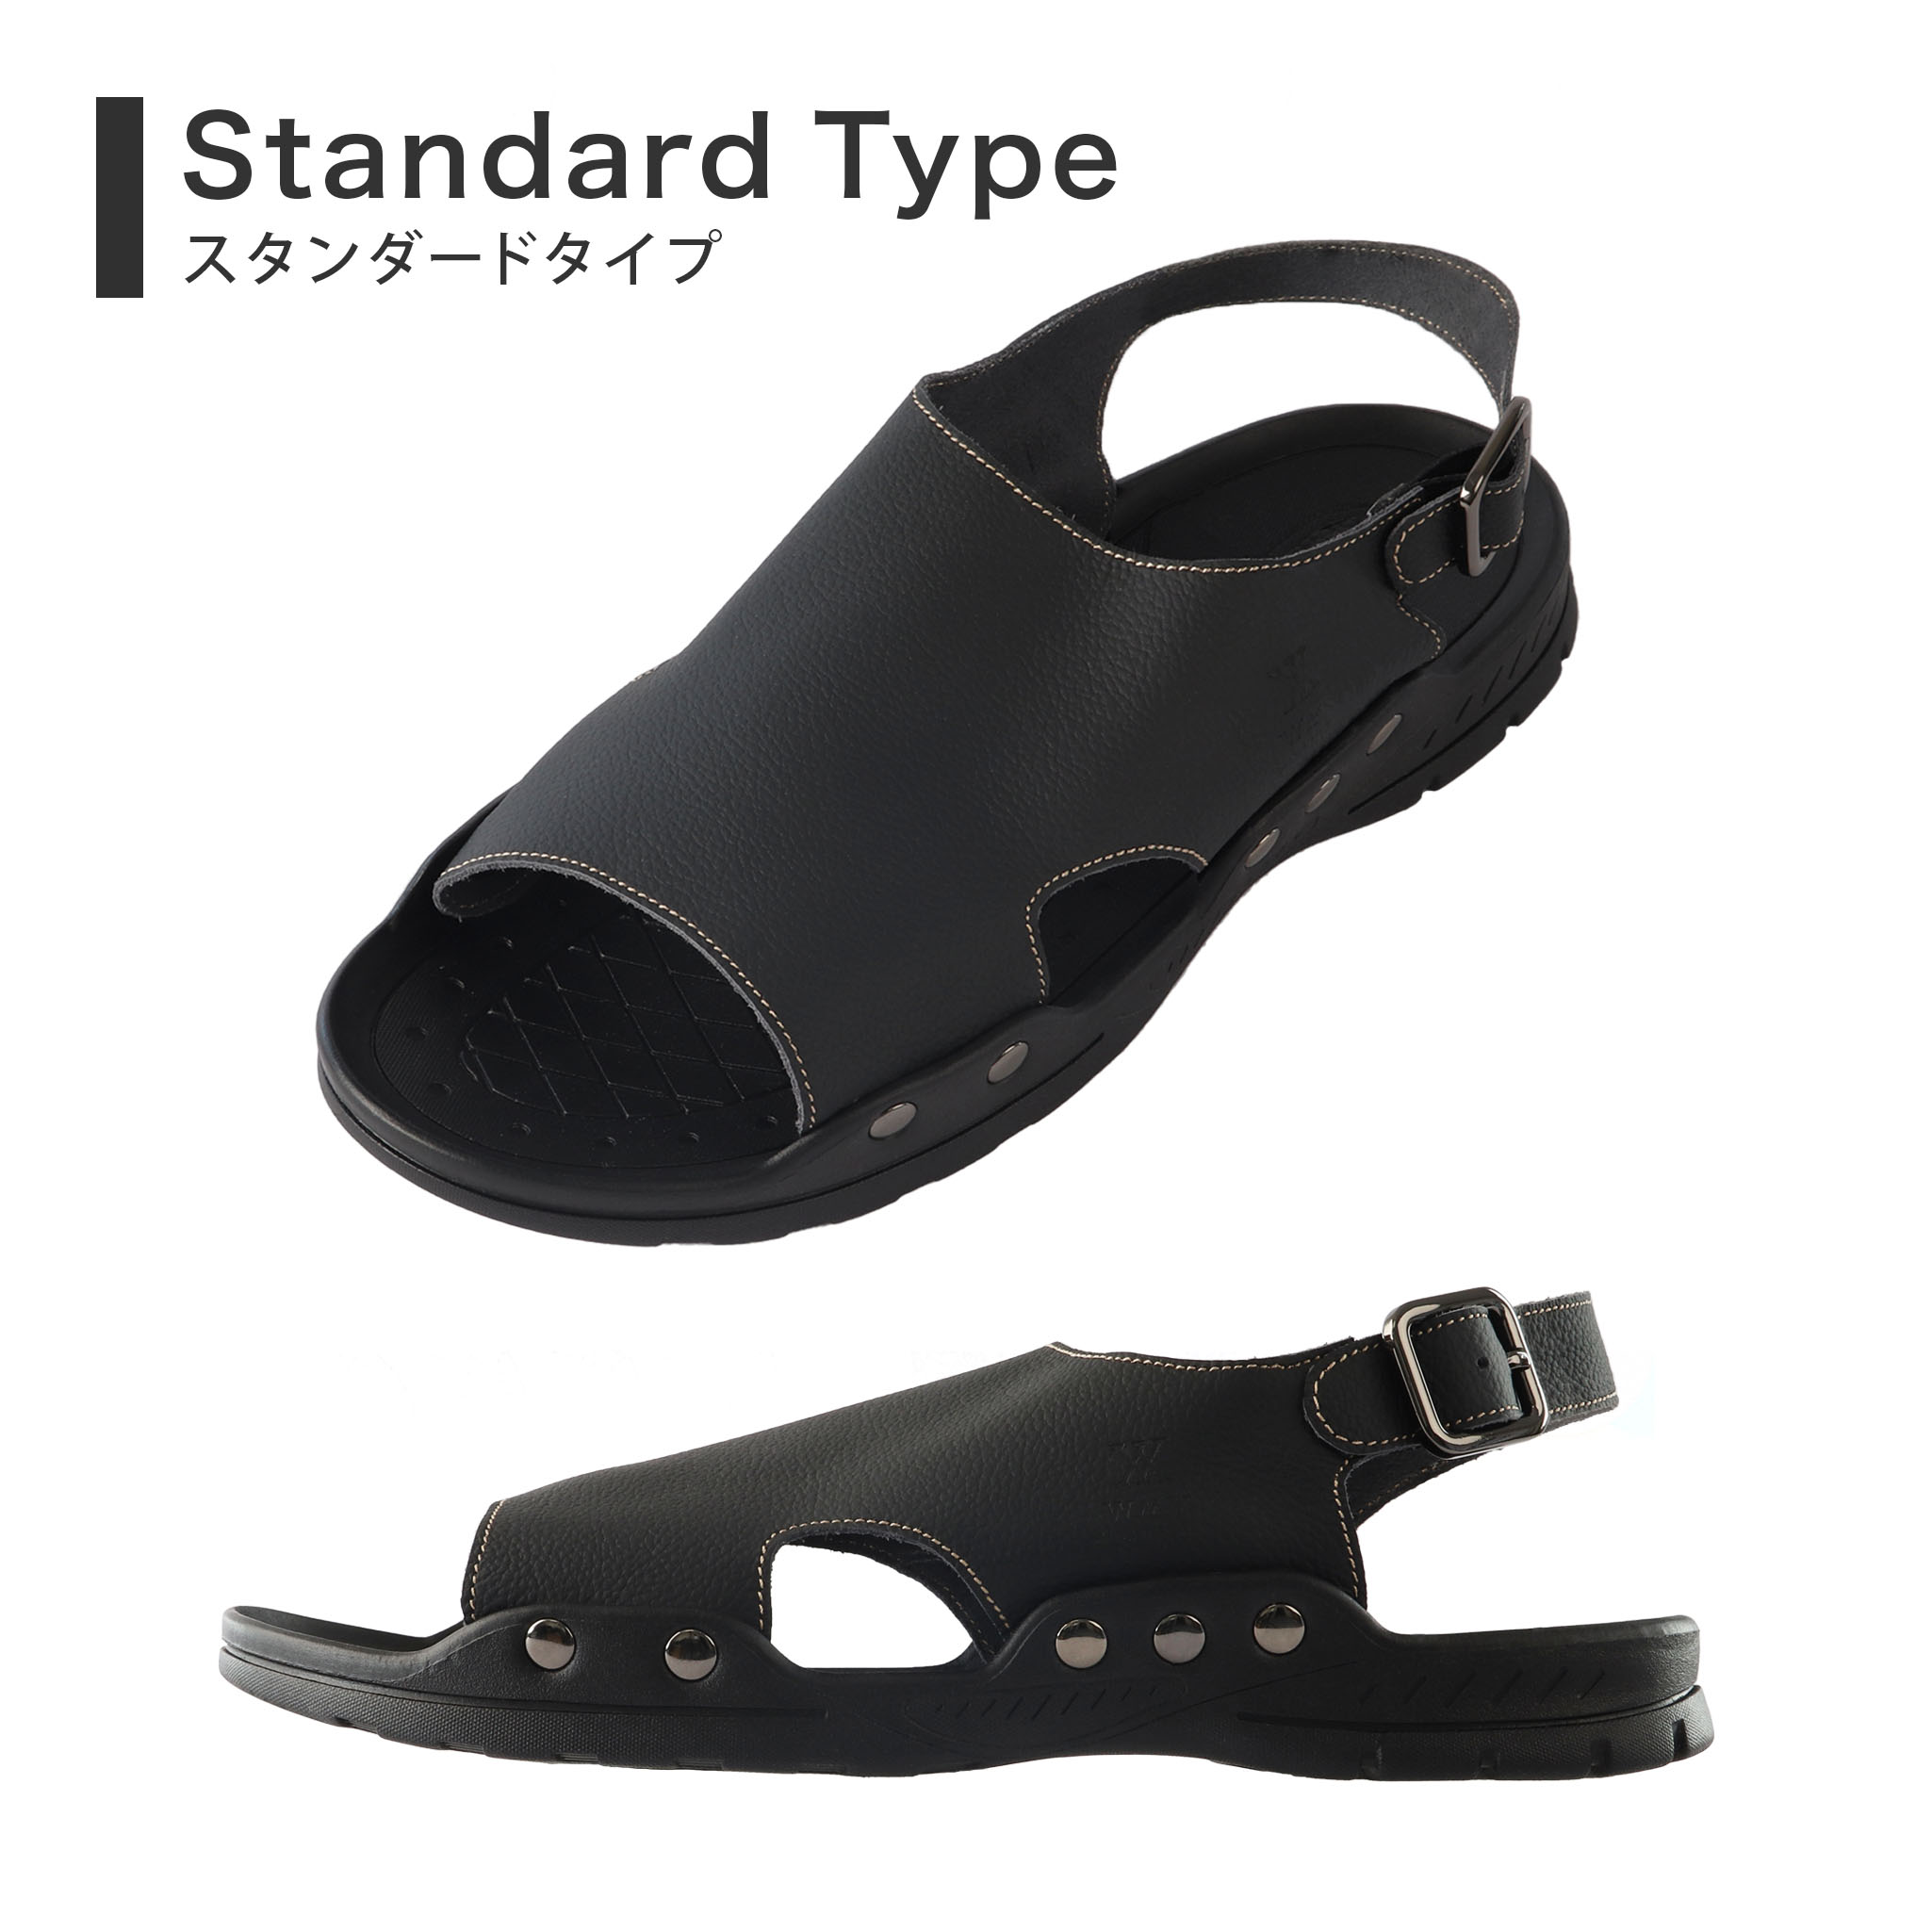 日本製 サンダル レザー 踵付き 本革 歩きやすい 滑りにくい メンズ レディース レザーサンダル スリッパ 革 黒 ブラック おしゃれ 父の日 高級  ブランド WMY